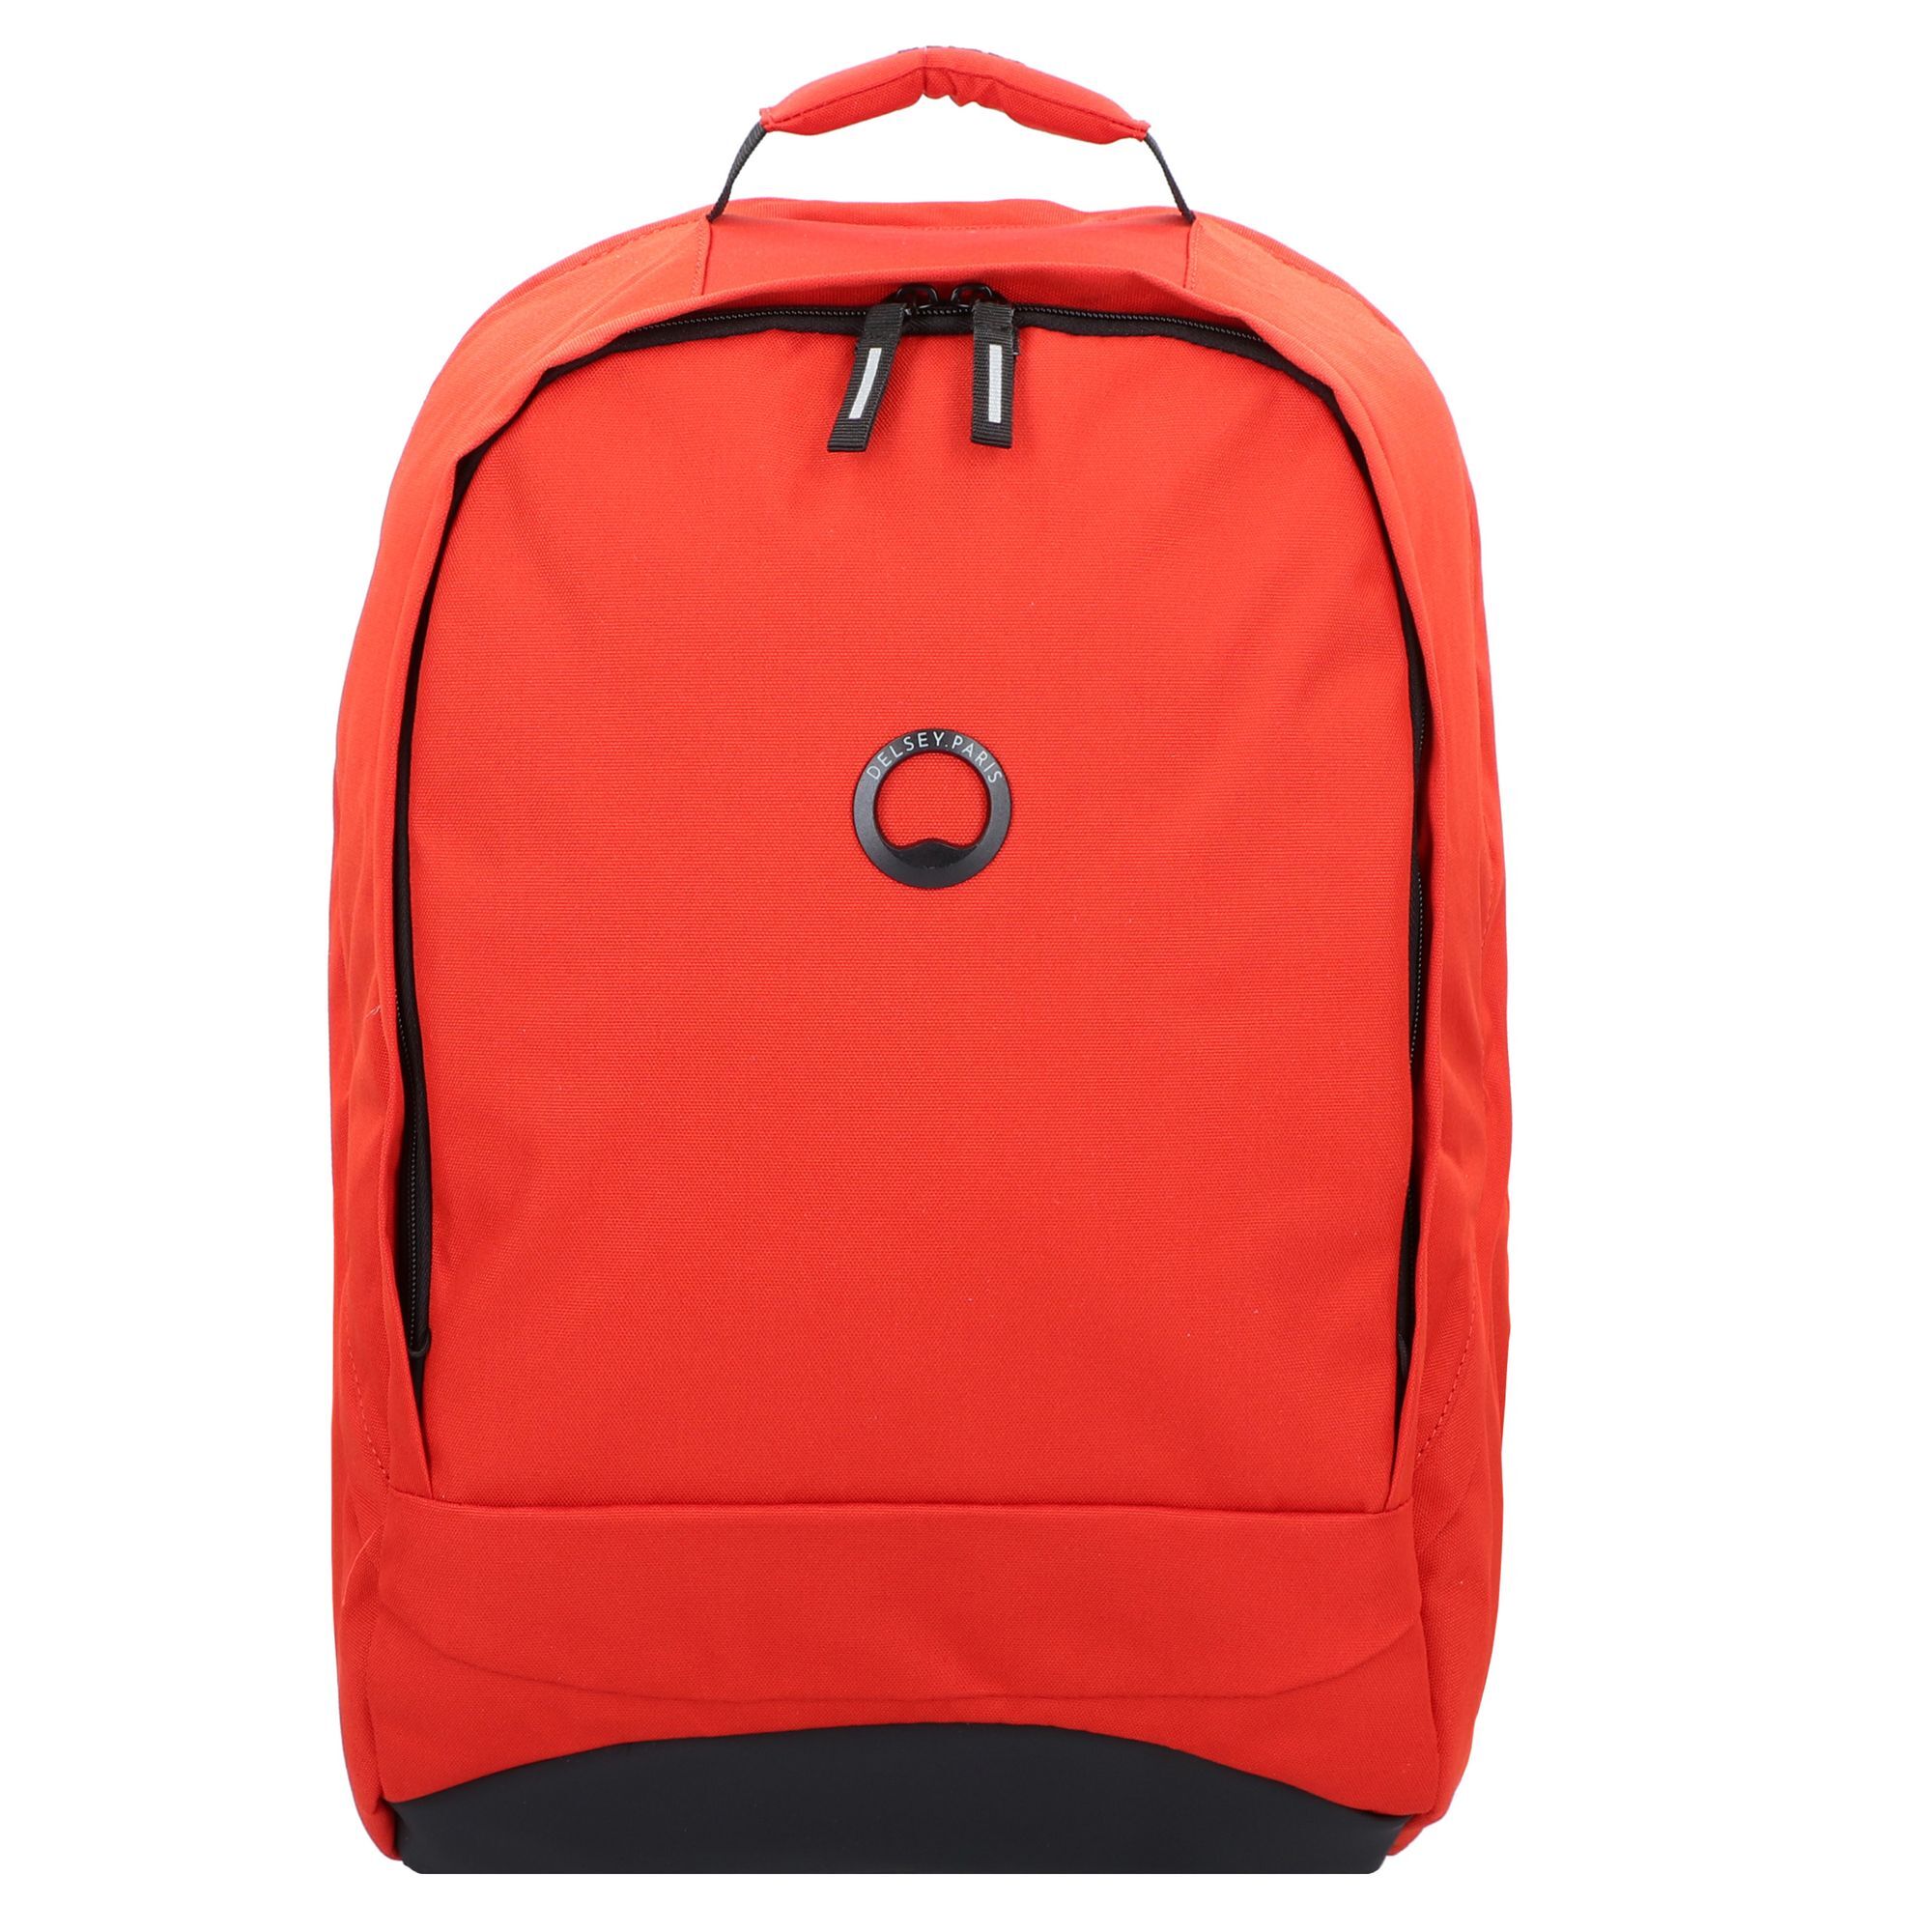 Рюкзак Delsey Securban RFID 45 cm Laptopfach, оранжевый